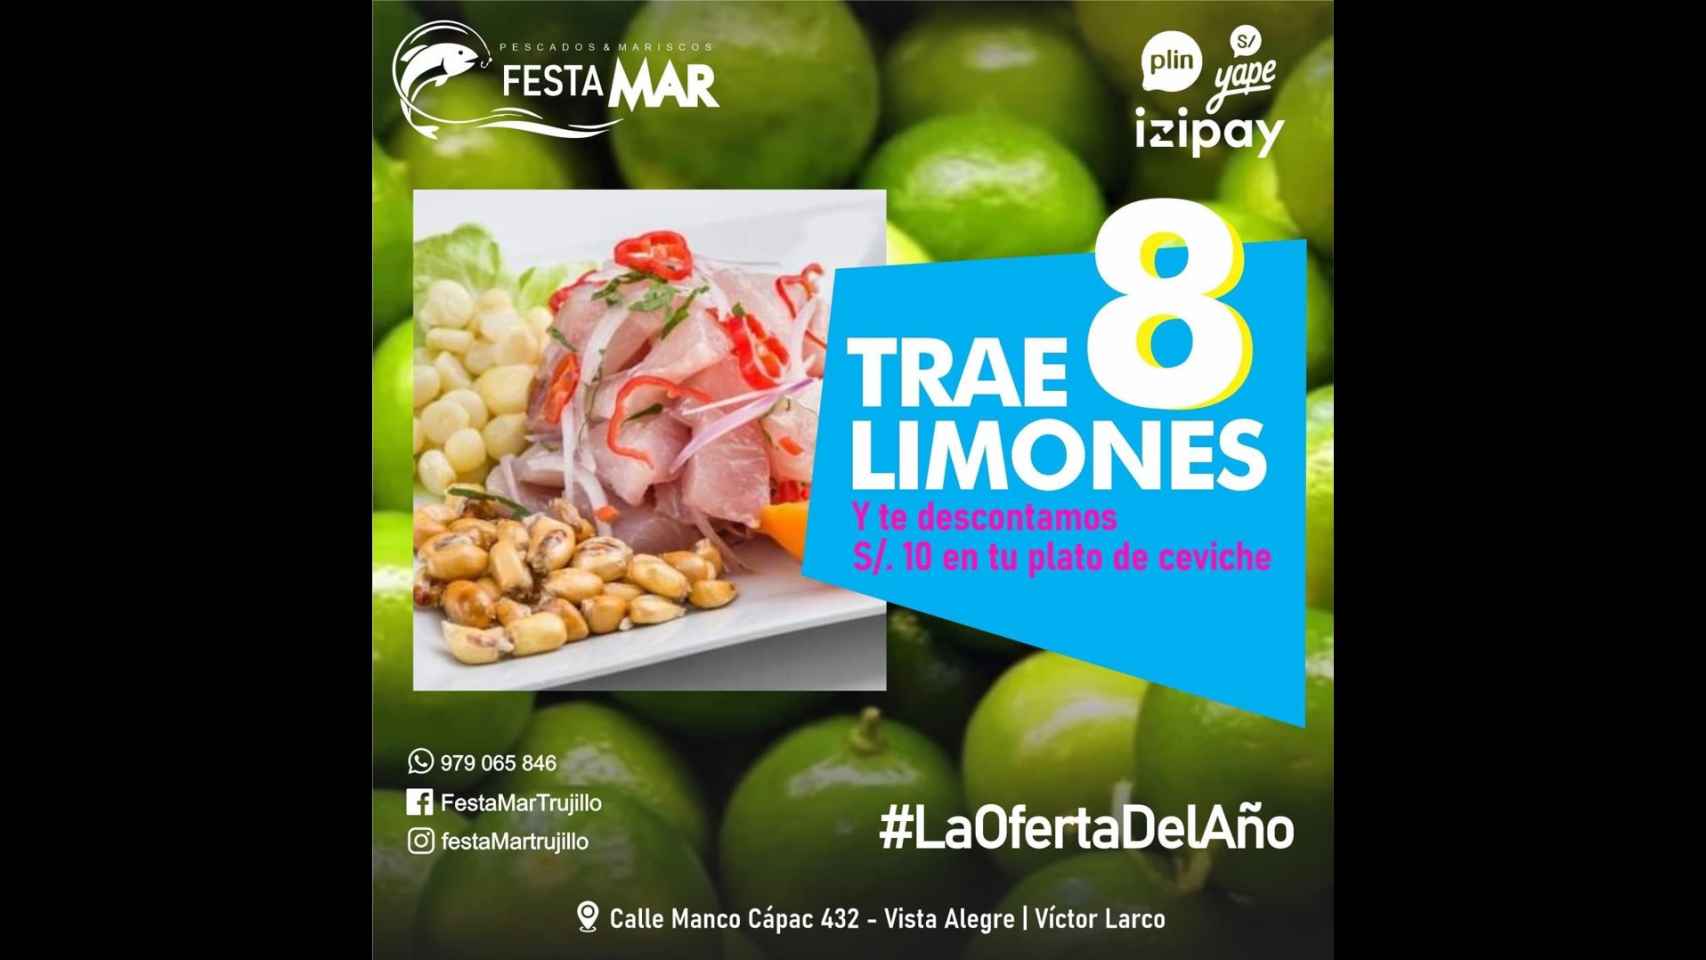 Una publicación del restaurante Festa Mar de Trujillo ofrece un descuento de diez soles a cambio de ocho limas.